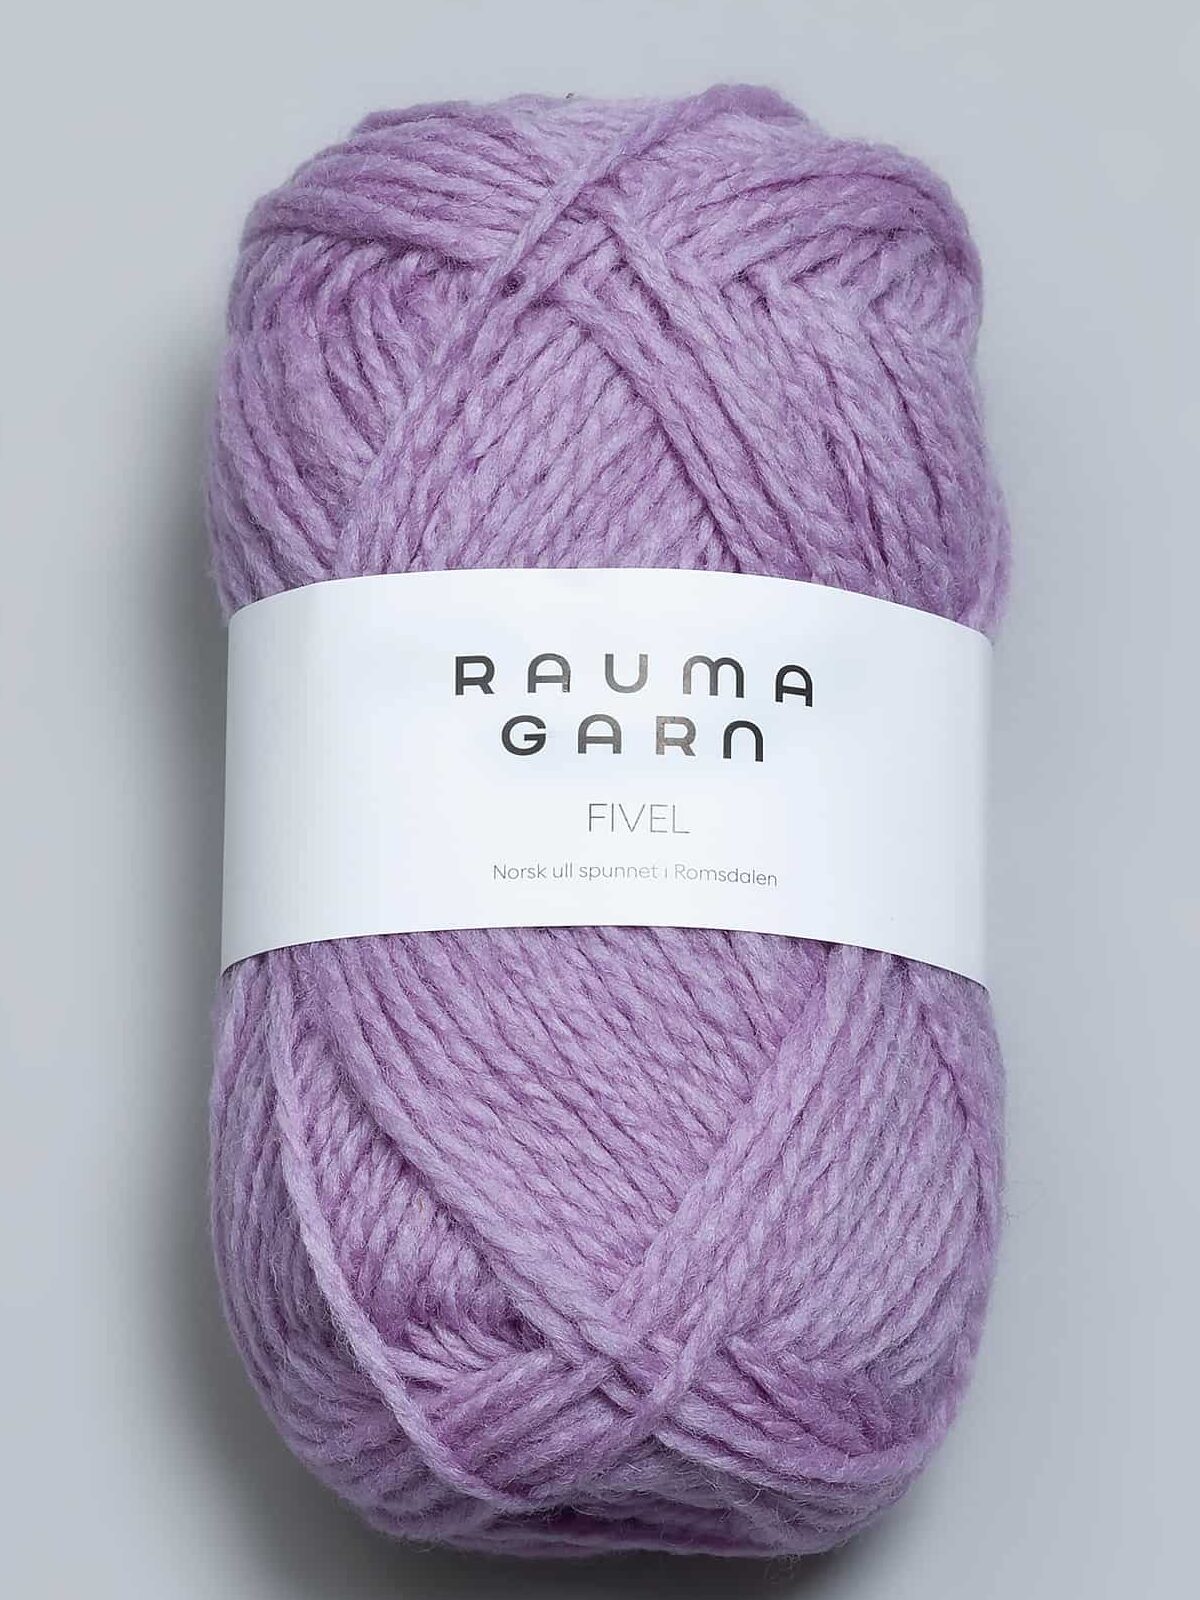 Rauma Garn » Side 13 af » Rauma Garn online hos Nordisk Garn